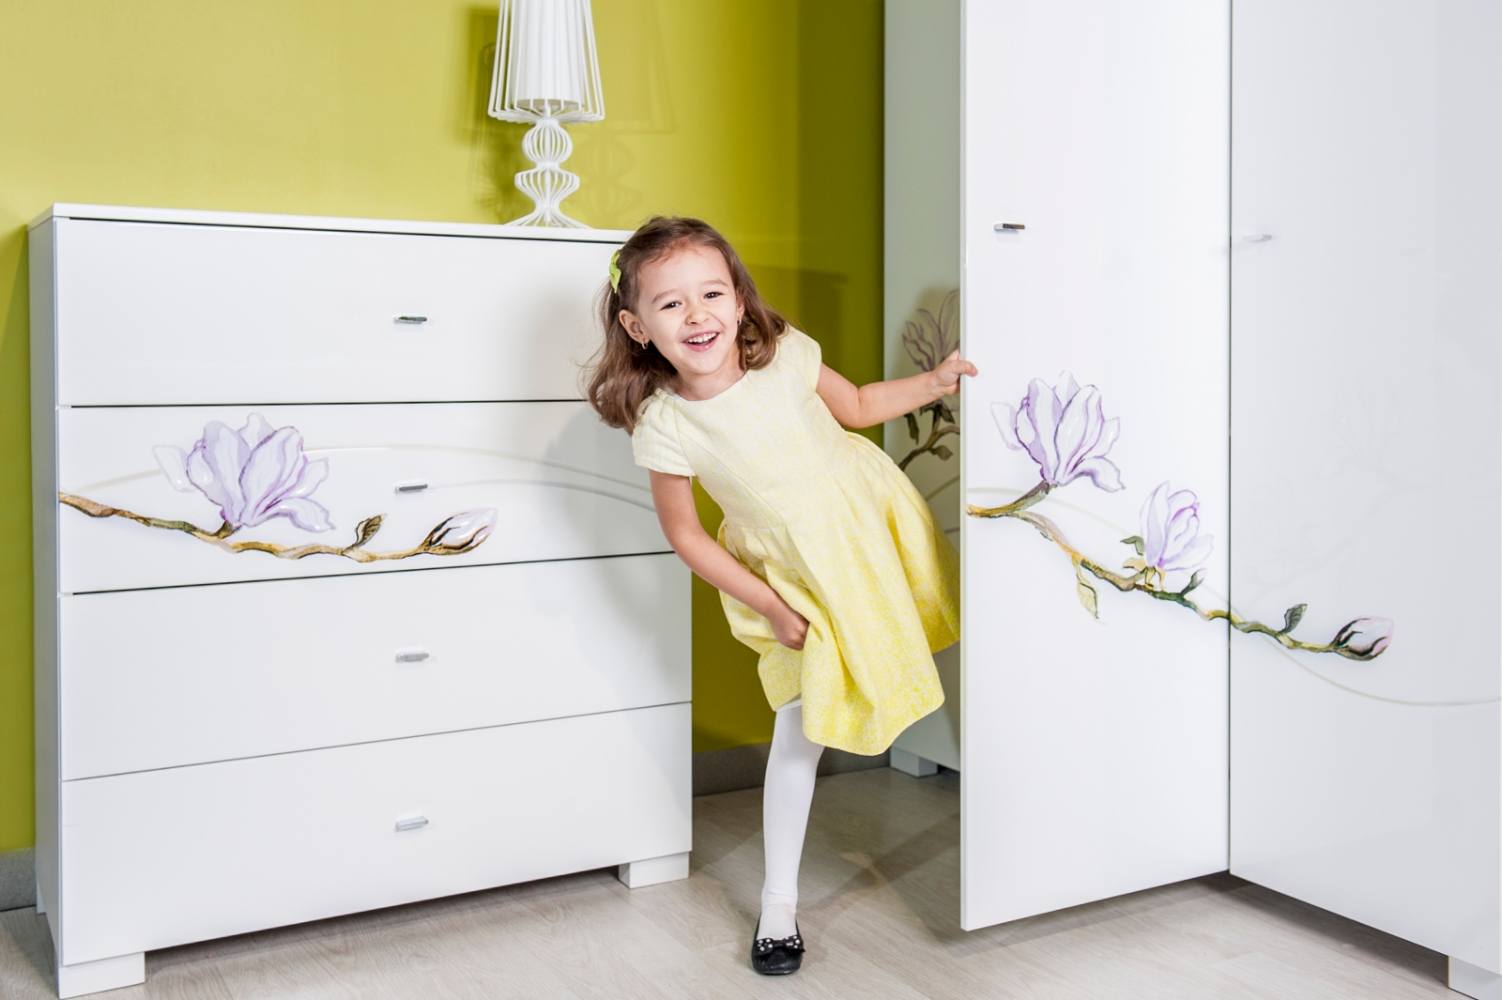 Подборка Детская мебель для девочки — сказка, которую легко воплотить в реальность на фото
				